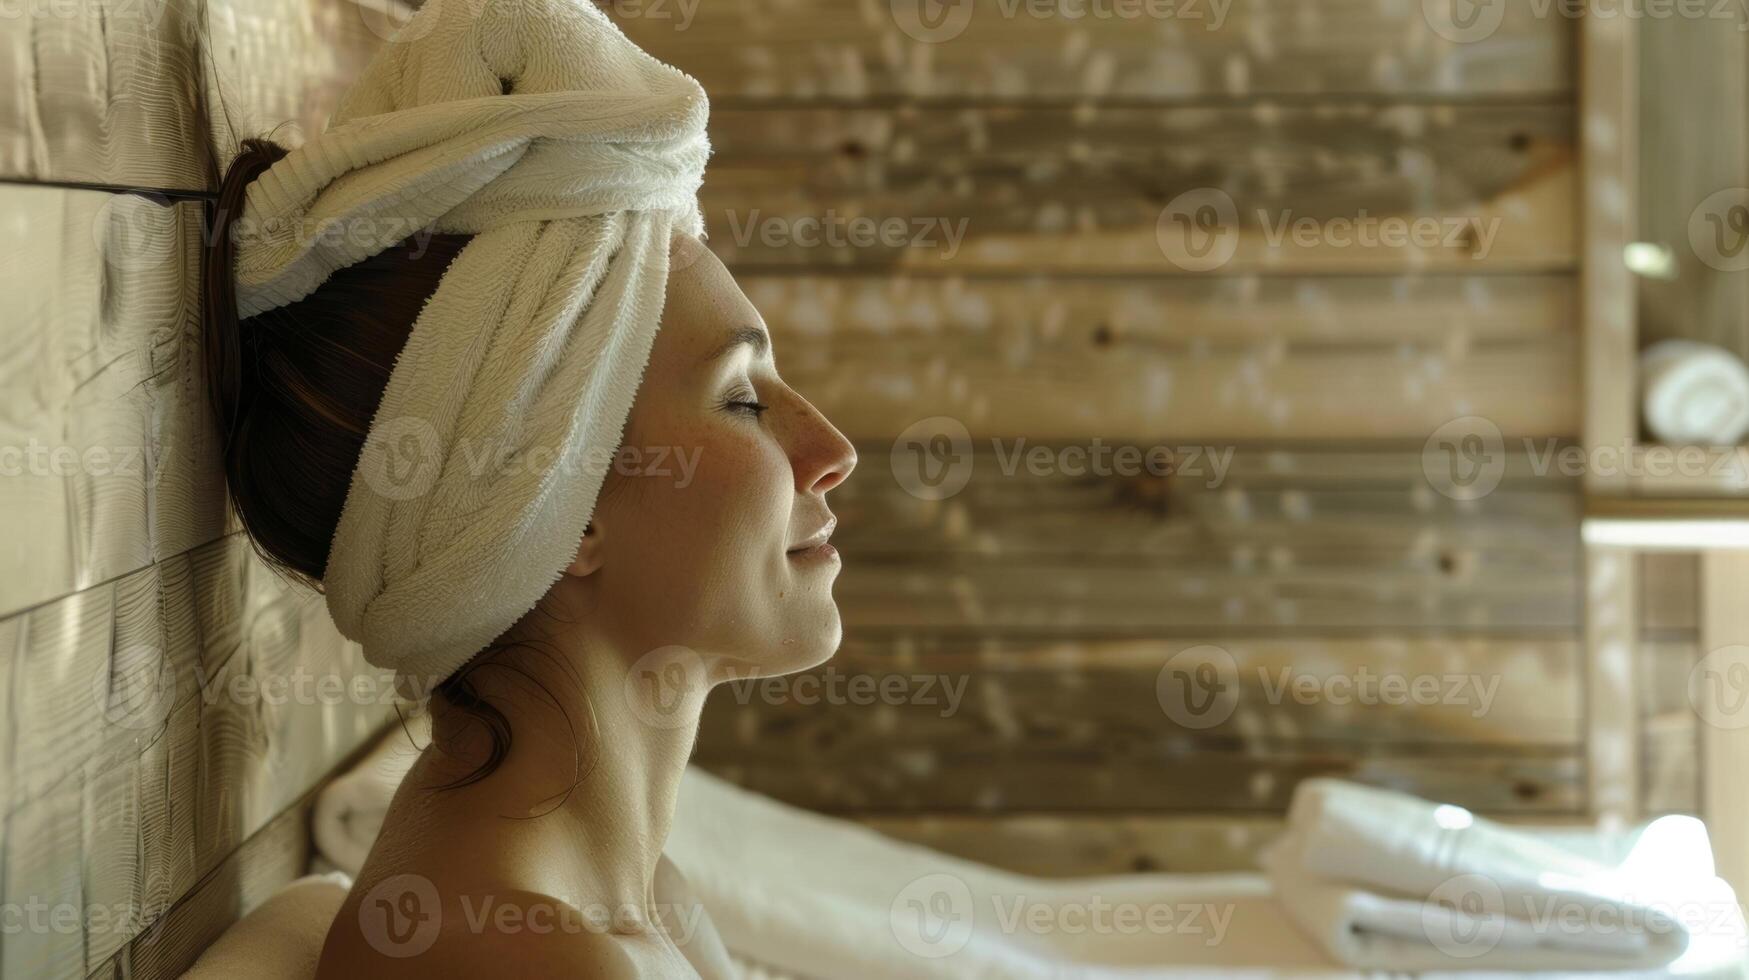 das Wärme von das Sauna und das erfrischend Gefühl von ein Gesichts- erstellen das perfekt Balance von Hitze und Kühle. foto